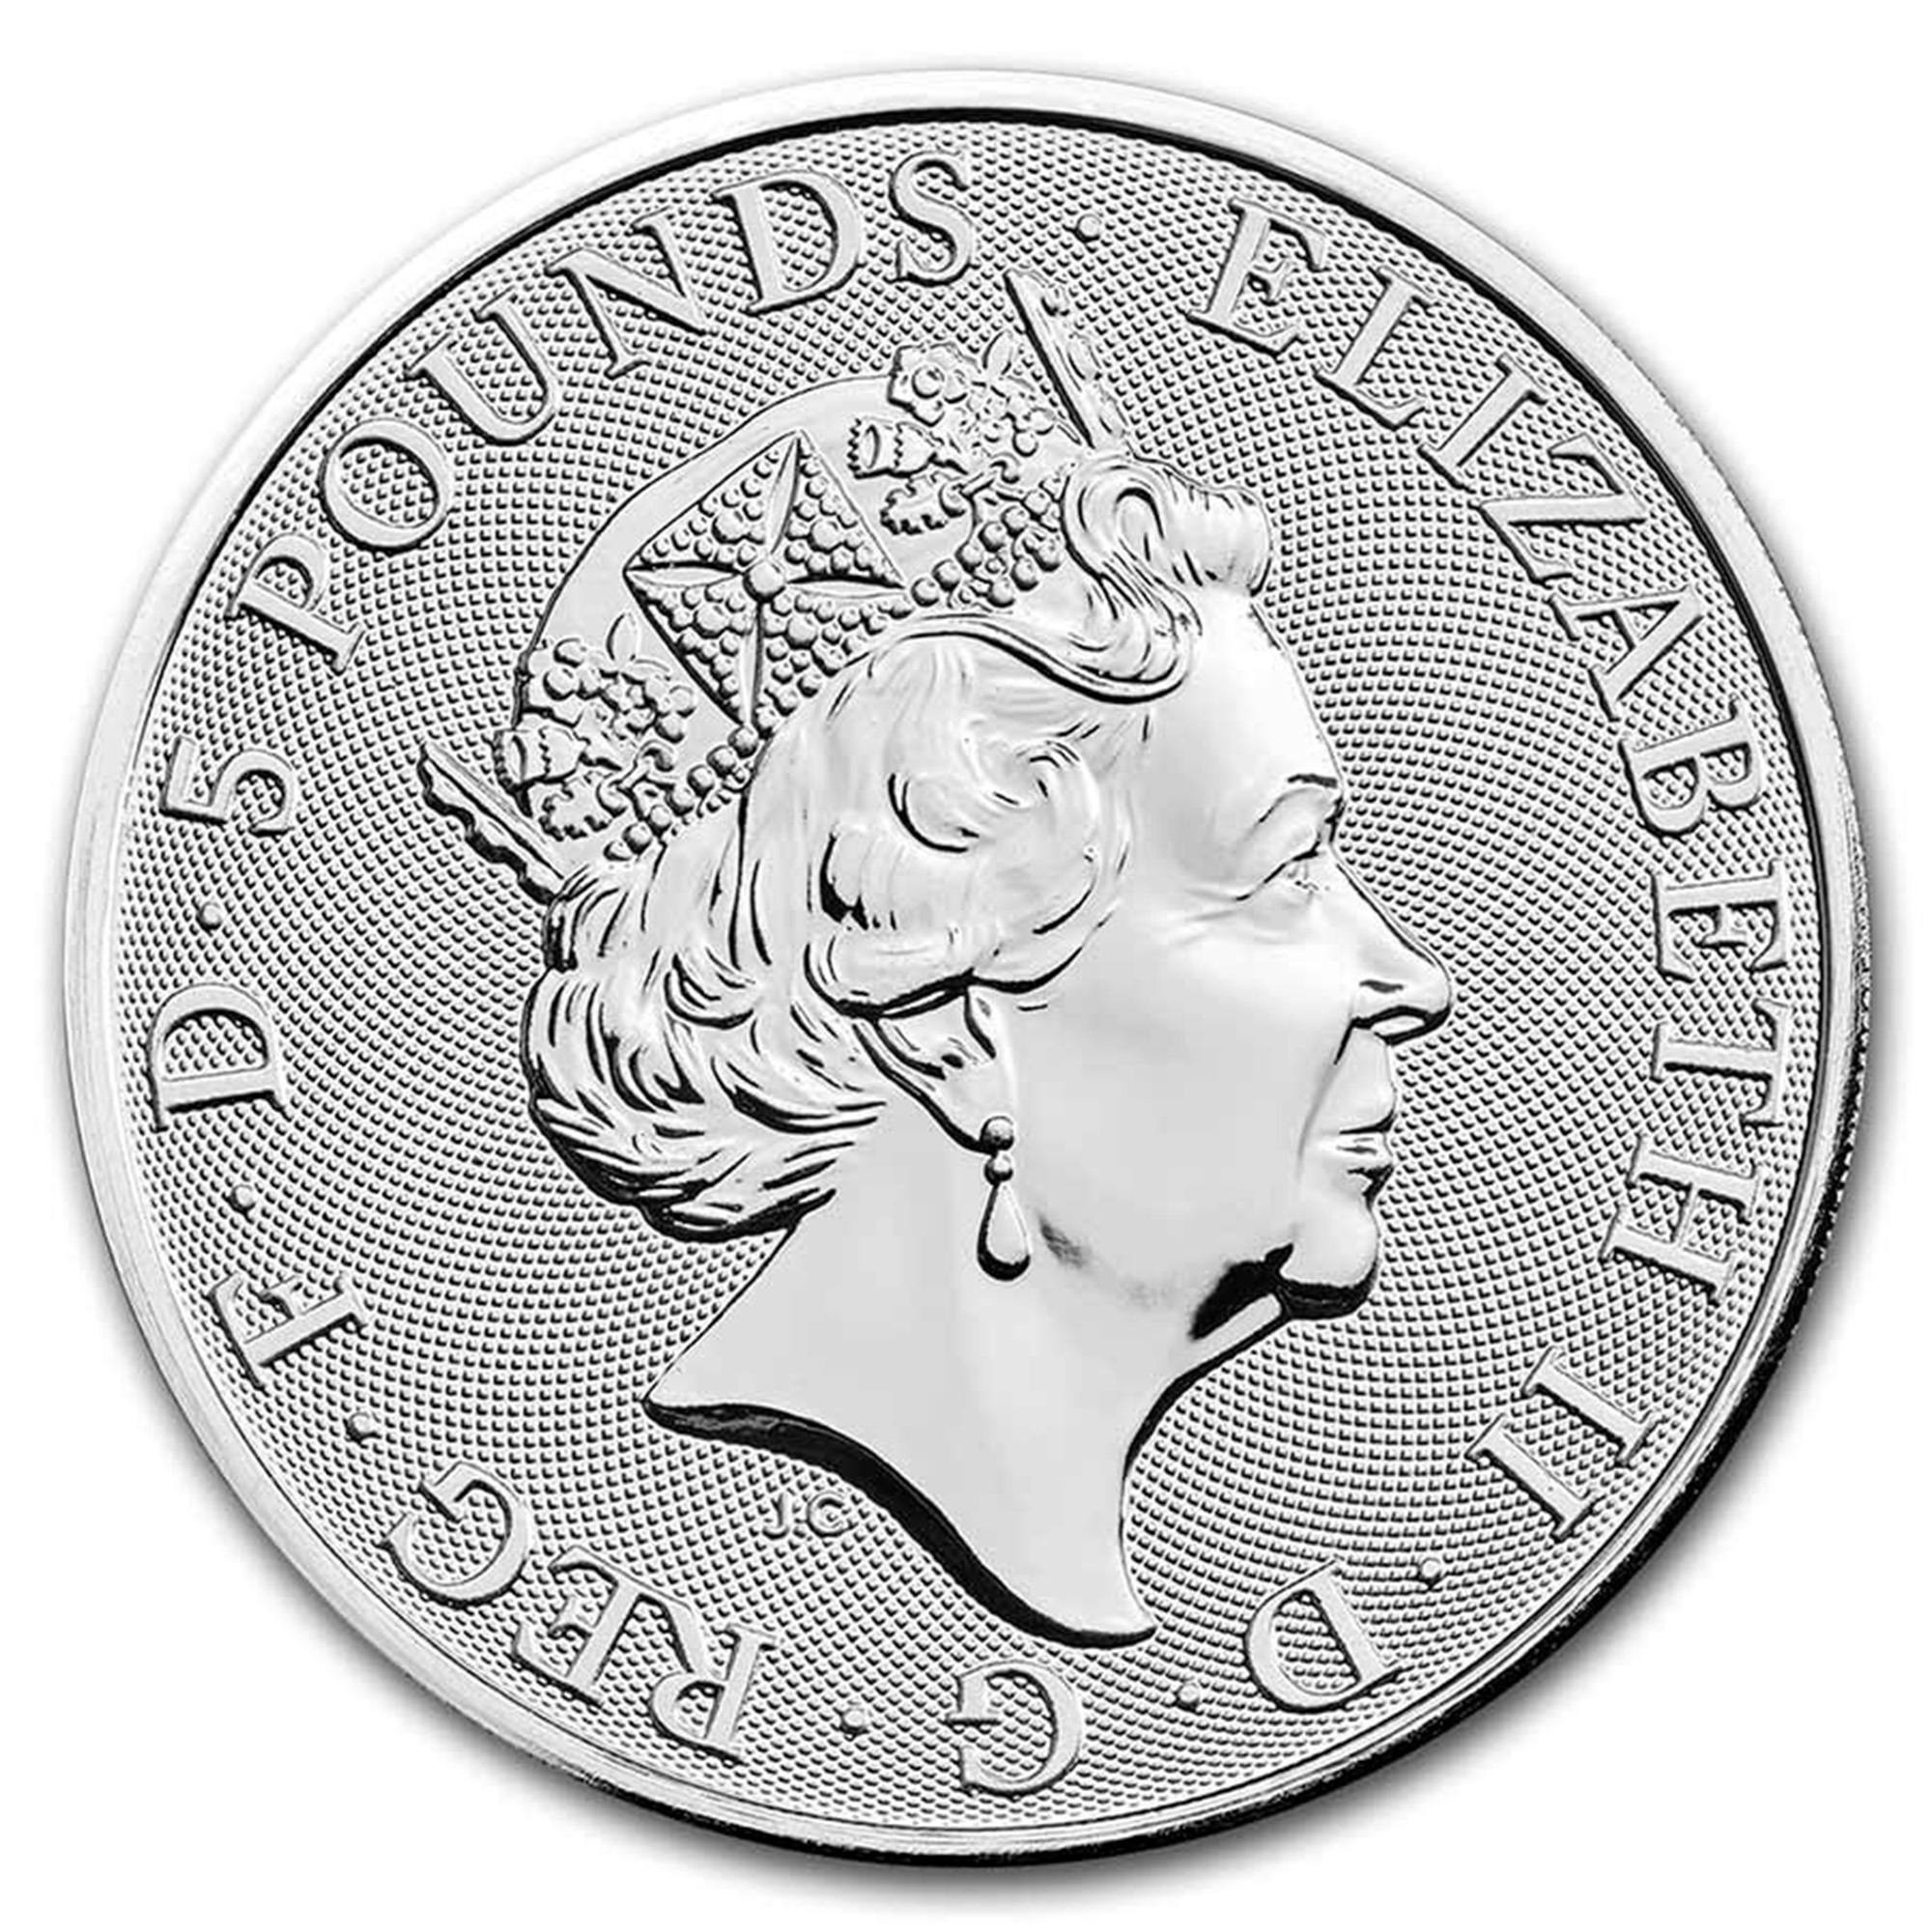 2022 2oz Great Britain Tudor Beats Silver Lion Of England Coin